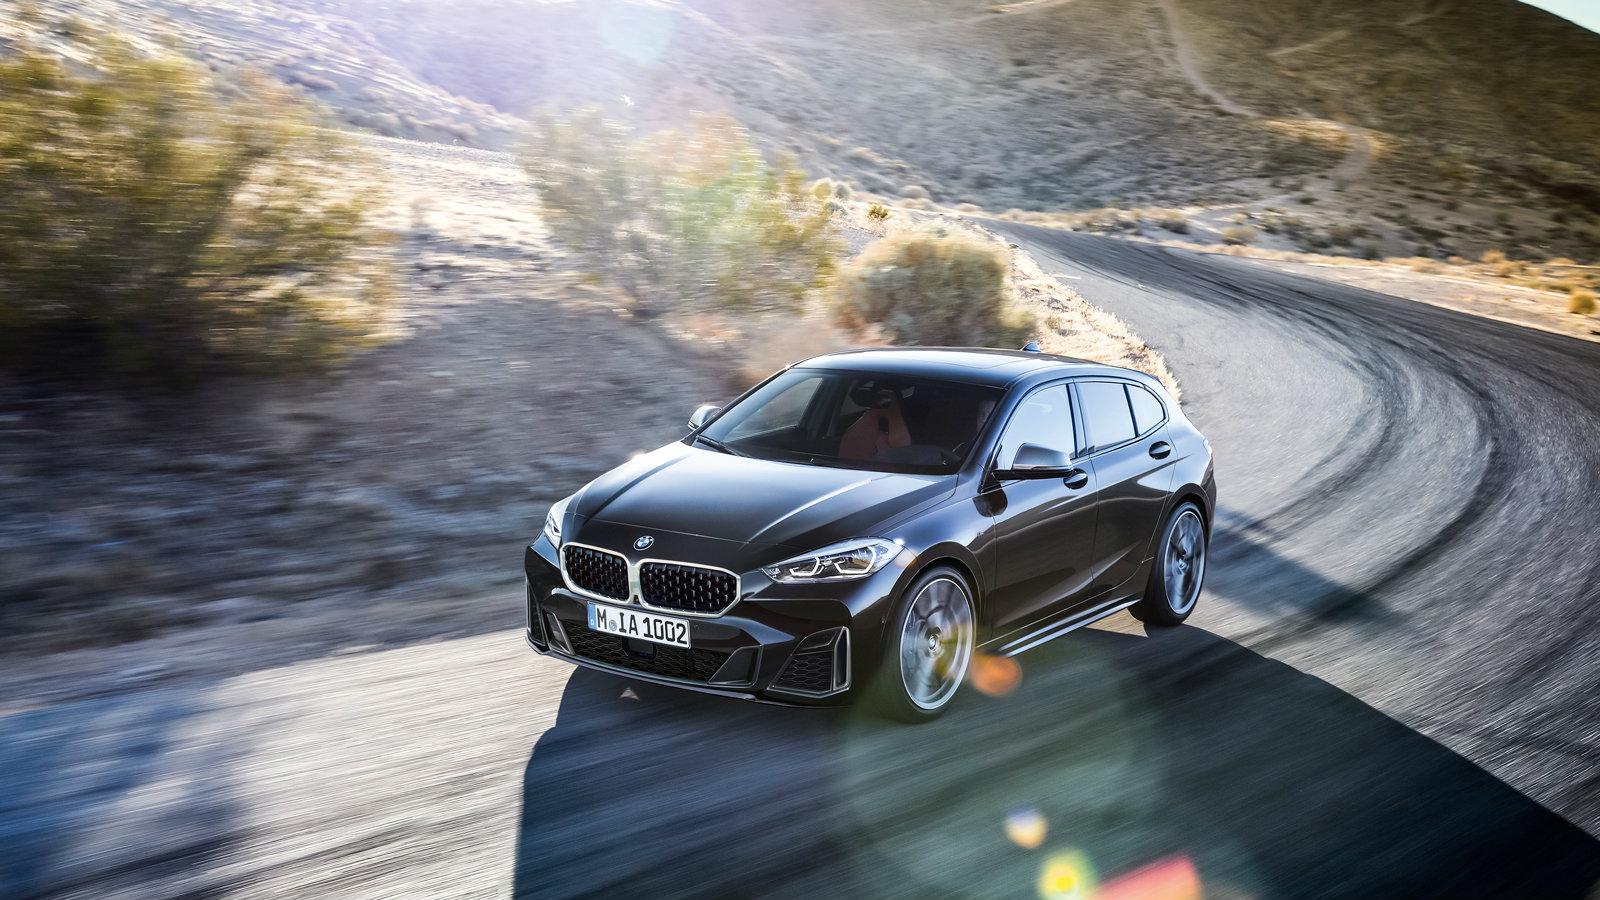 ΟΔΗΓΟΥΜΕ: Νέα BMW Σειρά 1 - Οδηγική απόλαυση… με εμπρός κίνηση!